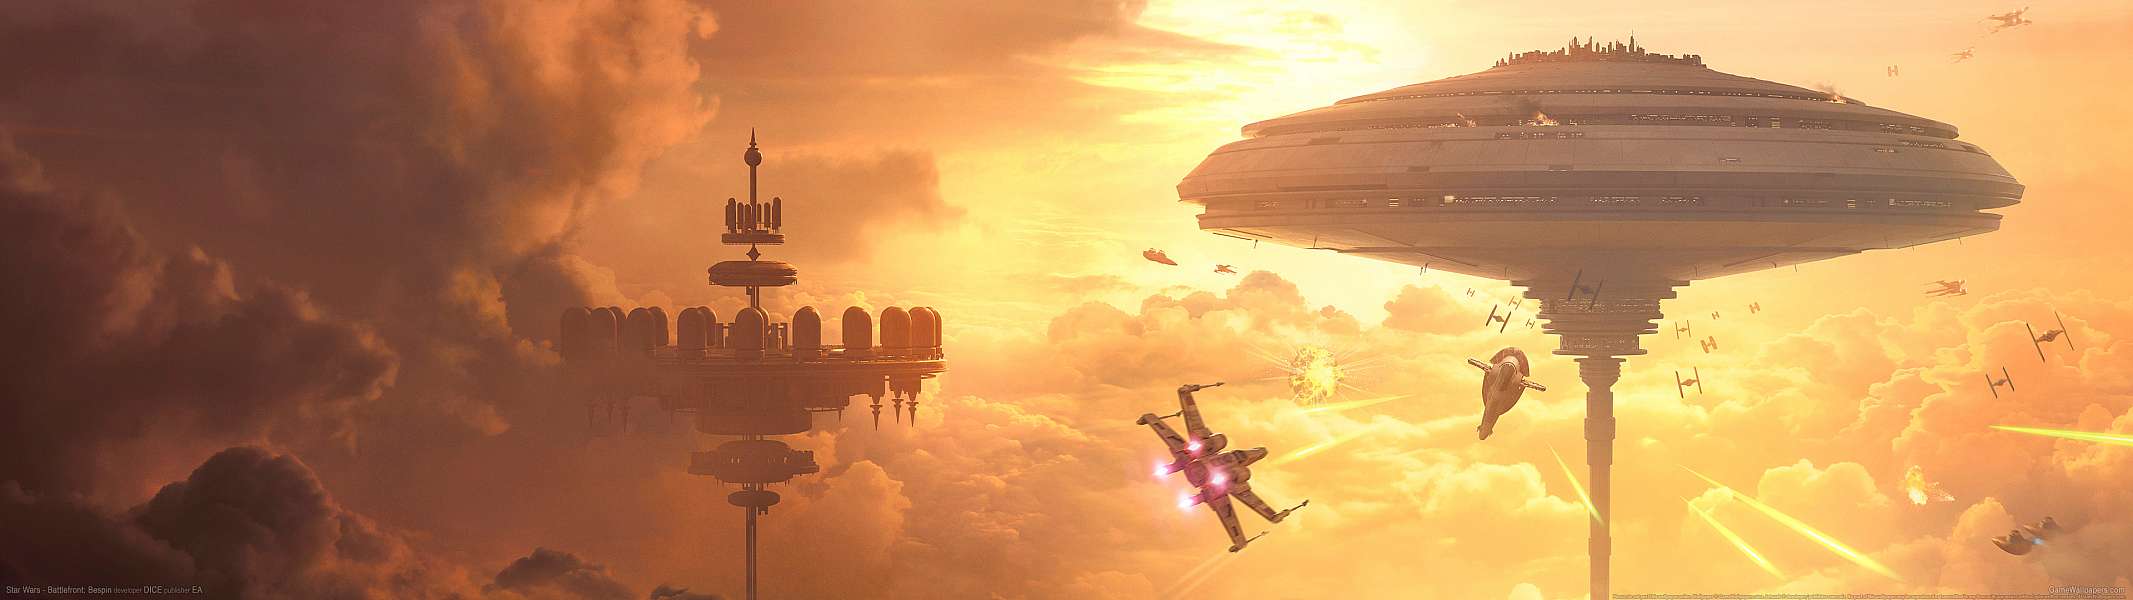 Star Wars - Battlefront: Bespin dual screen fond d'cran